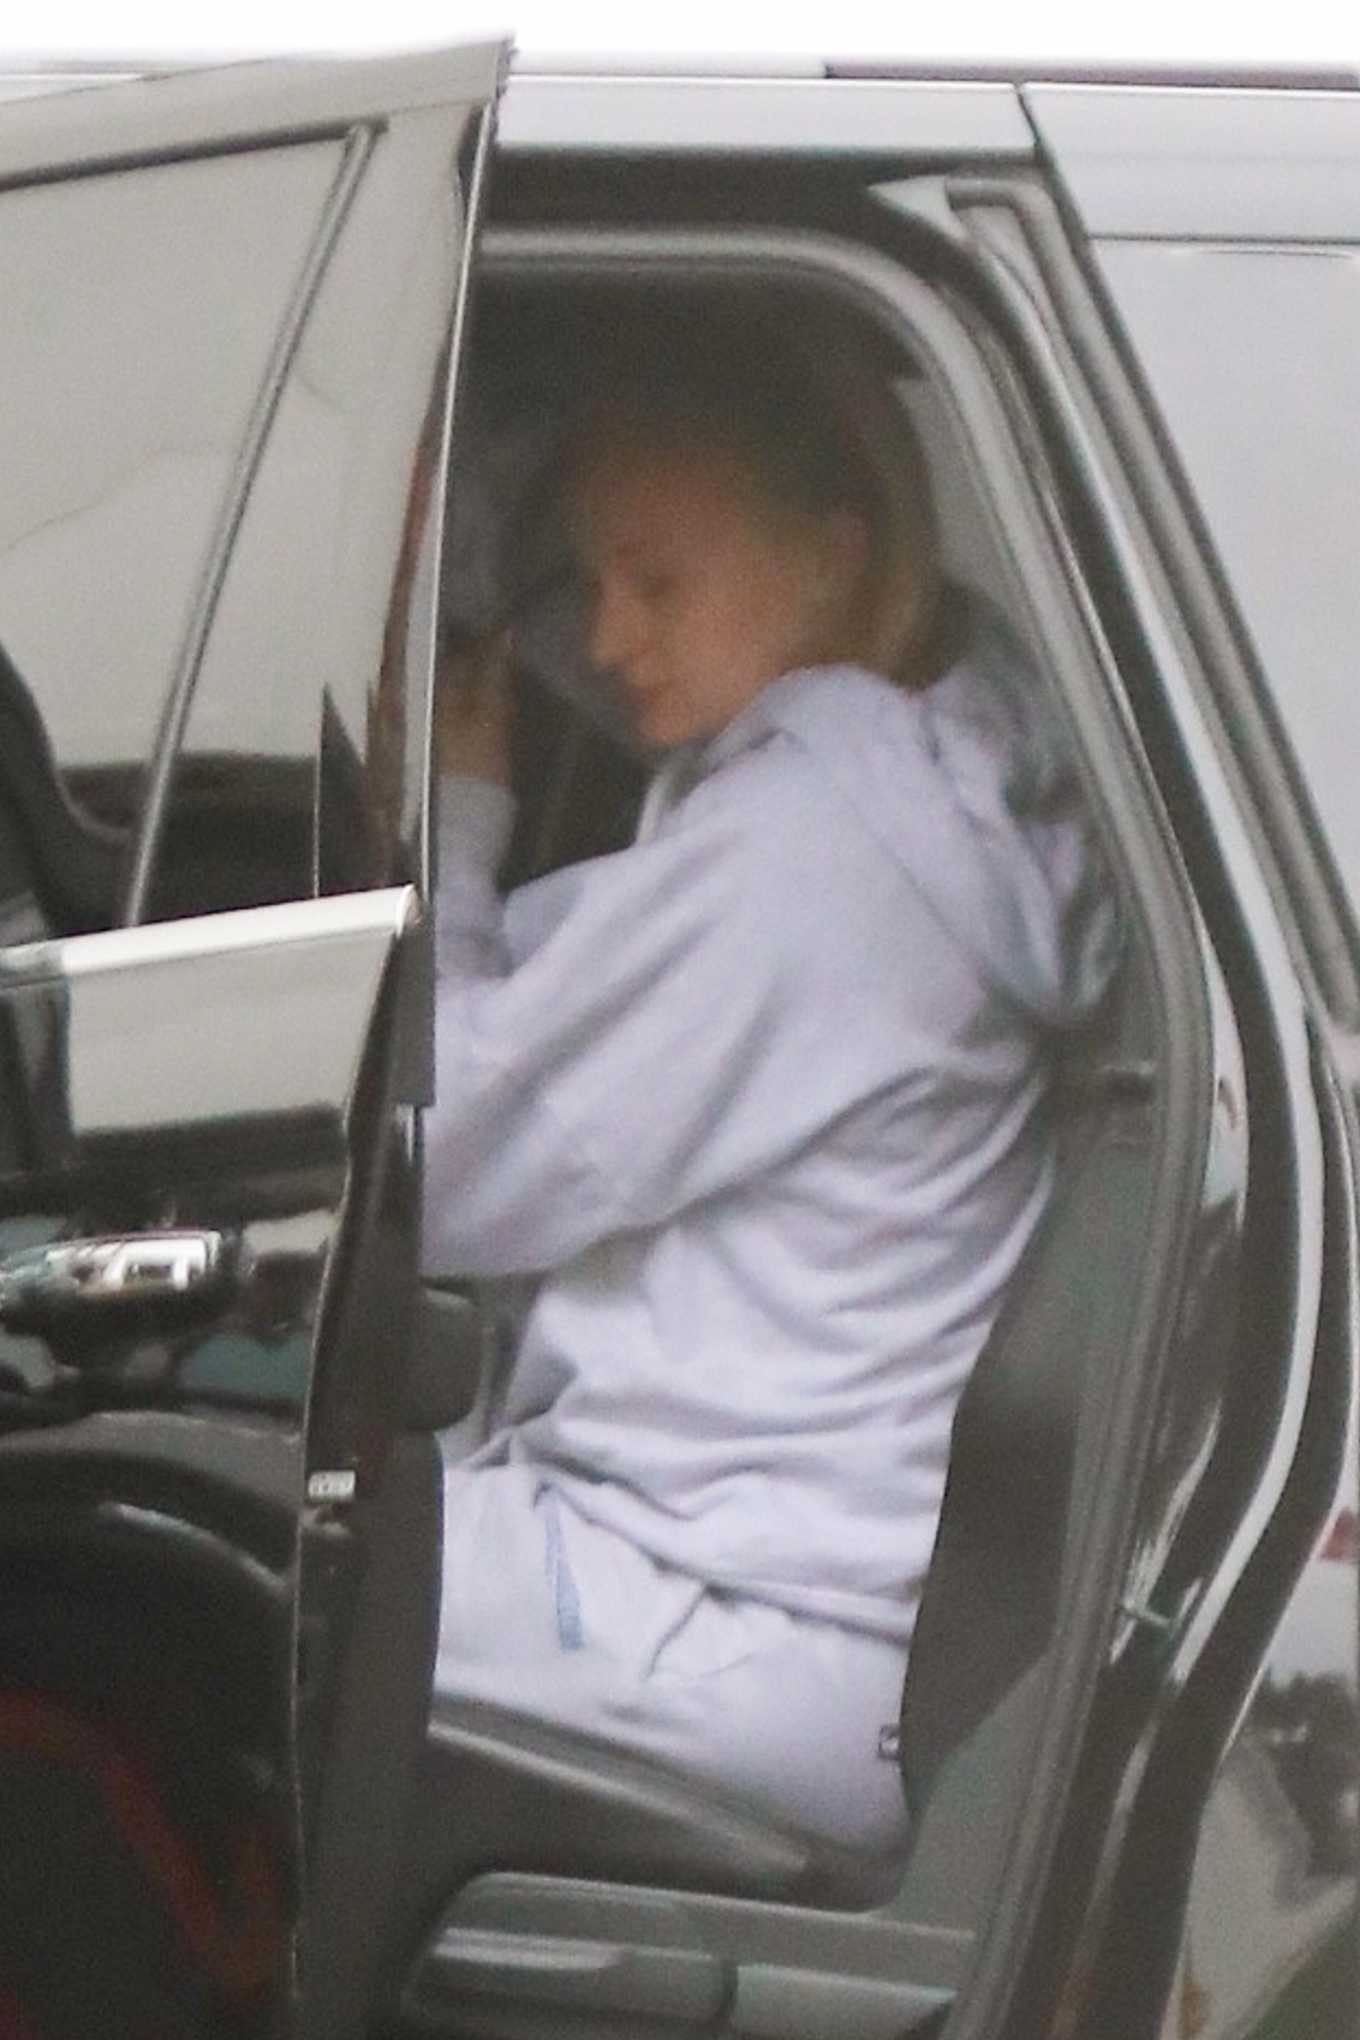 Sophie Turner â€“ Arrive at their ride in Los Angeles